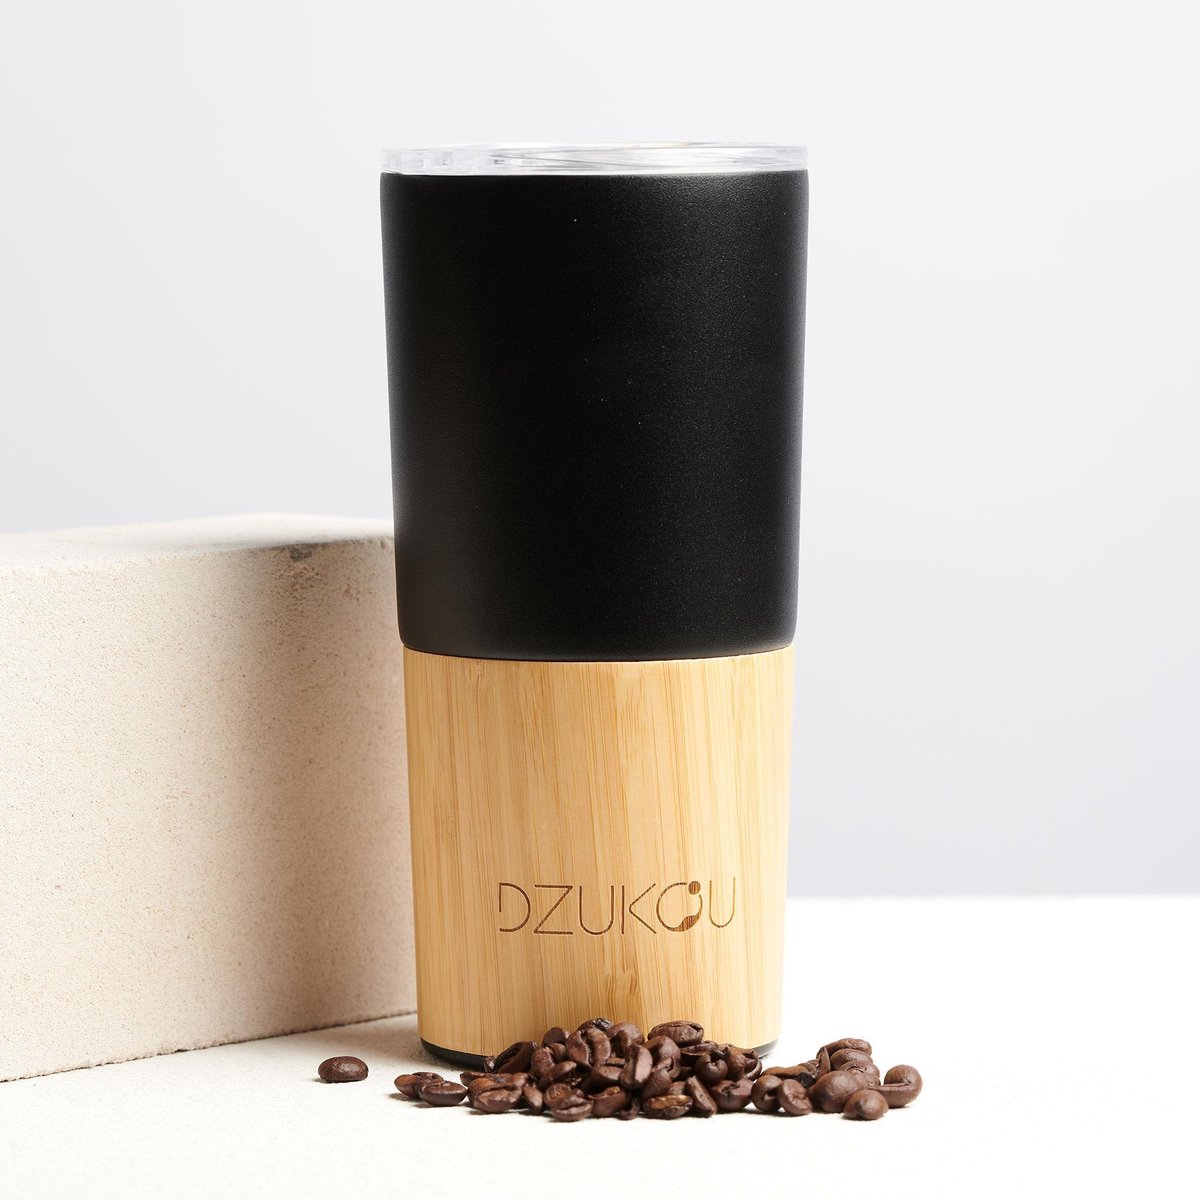 Dzukou Inca Trail - RVS Koffie Reisbeker met Bamboe - Koffie To Go Beker - Koffie Travel Mug - RVS Koffiebeker met Bamboe - 470 ml